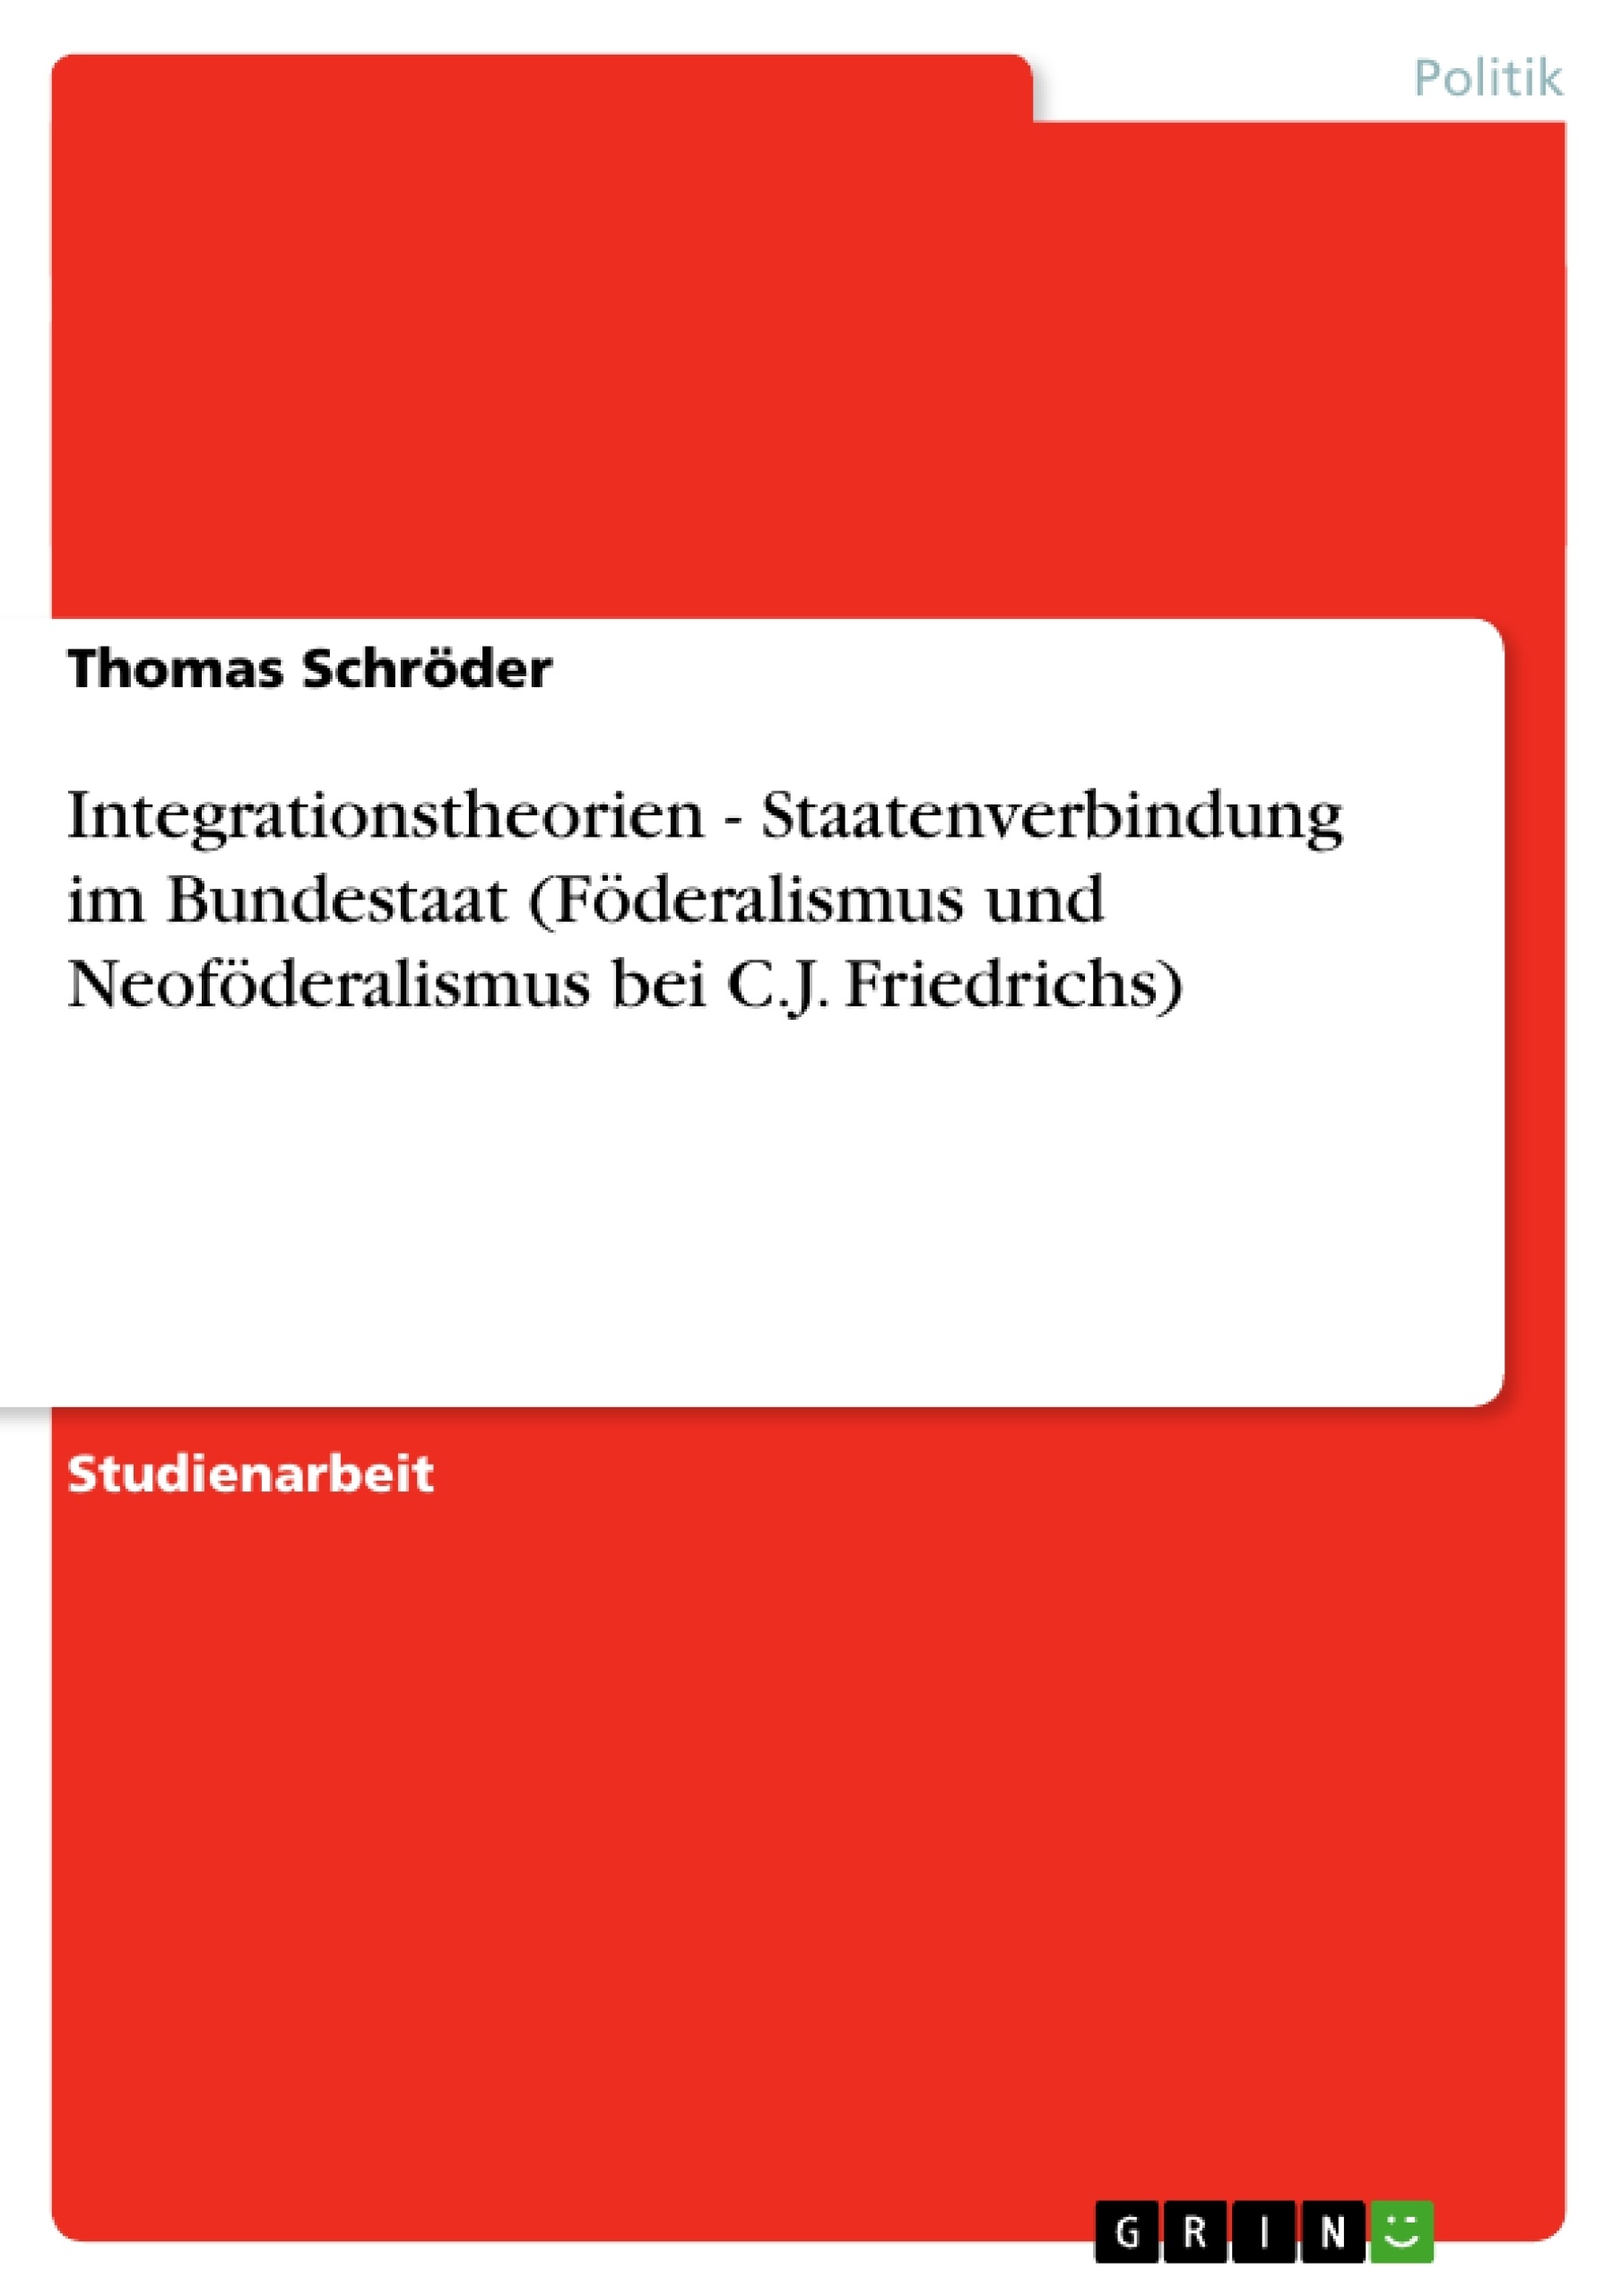 Title: Integrationstheorien - Staatenverbindung im Bundestaat (Föderalismus und Neoföderalismus bei C.J. Friedrichs)